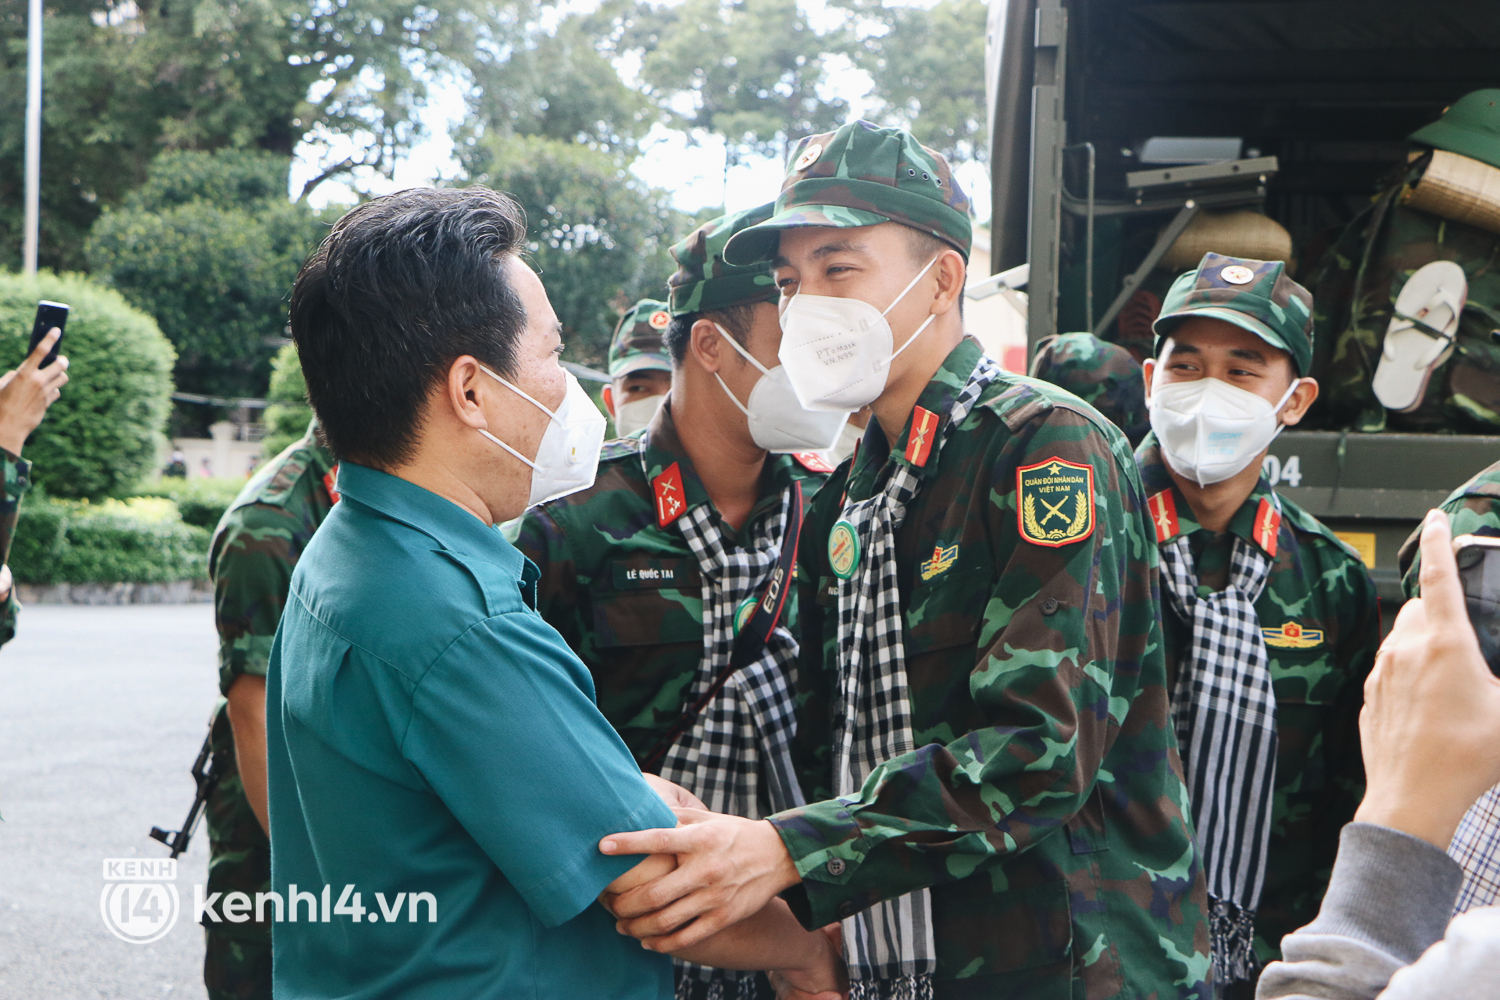 Chùm ảnh: Bộ đội bịn rịn vẫy tay tạm biệt người dân để trở về sau 2 tháng hỗ trợ TP.HCM chống dịch - Ảnh 6.